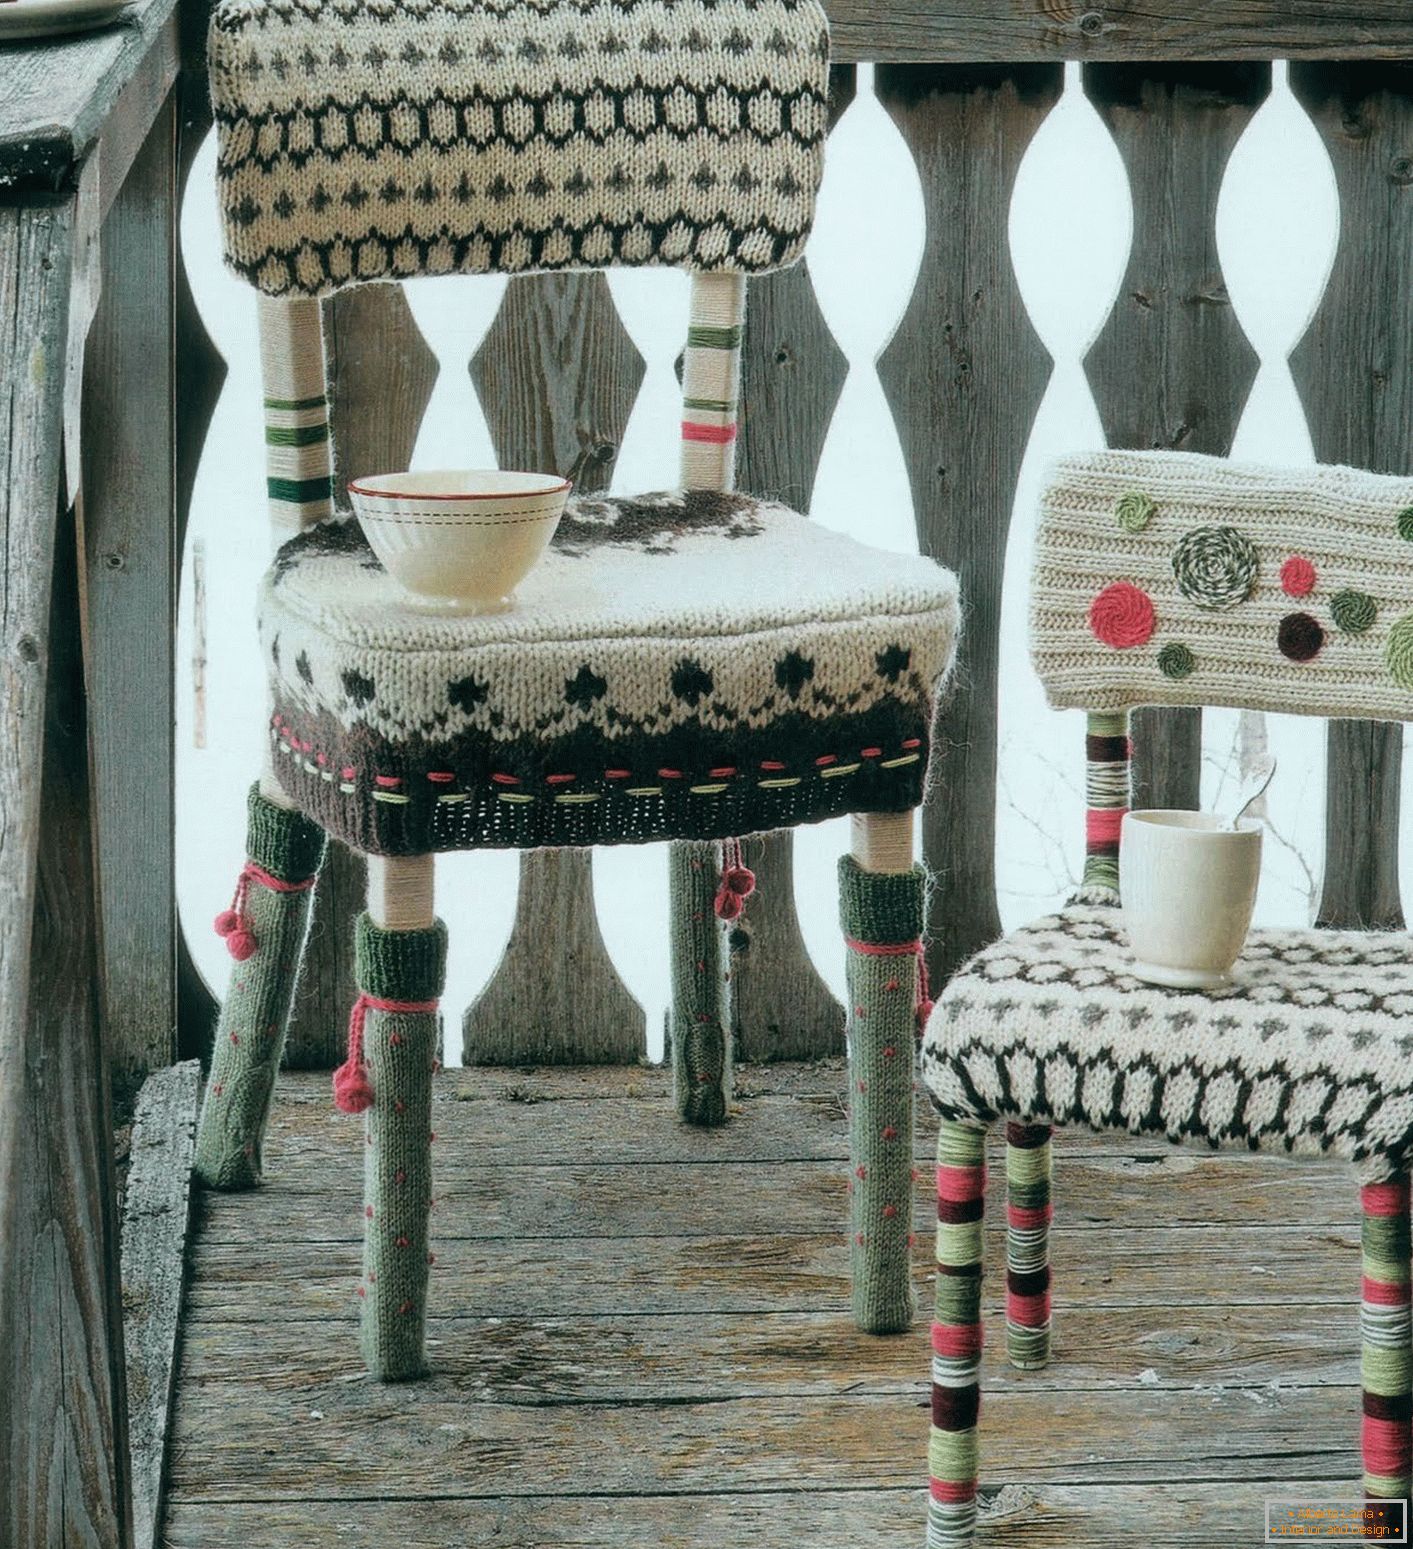 Sedia con rivestimento a maglia sul sedile, schienale e gambe